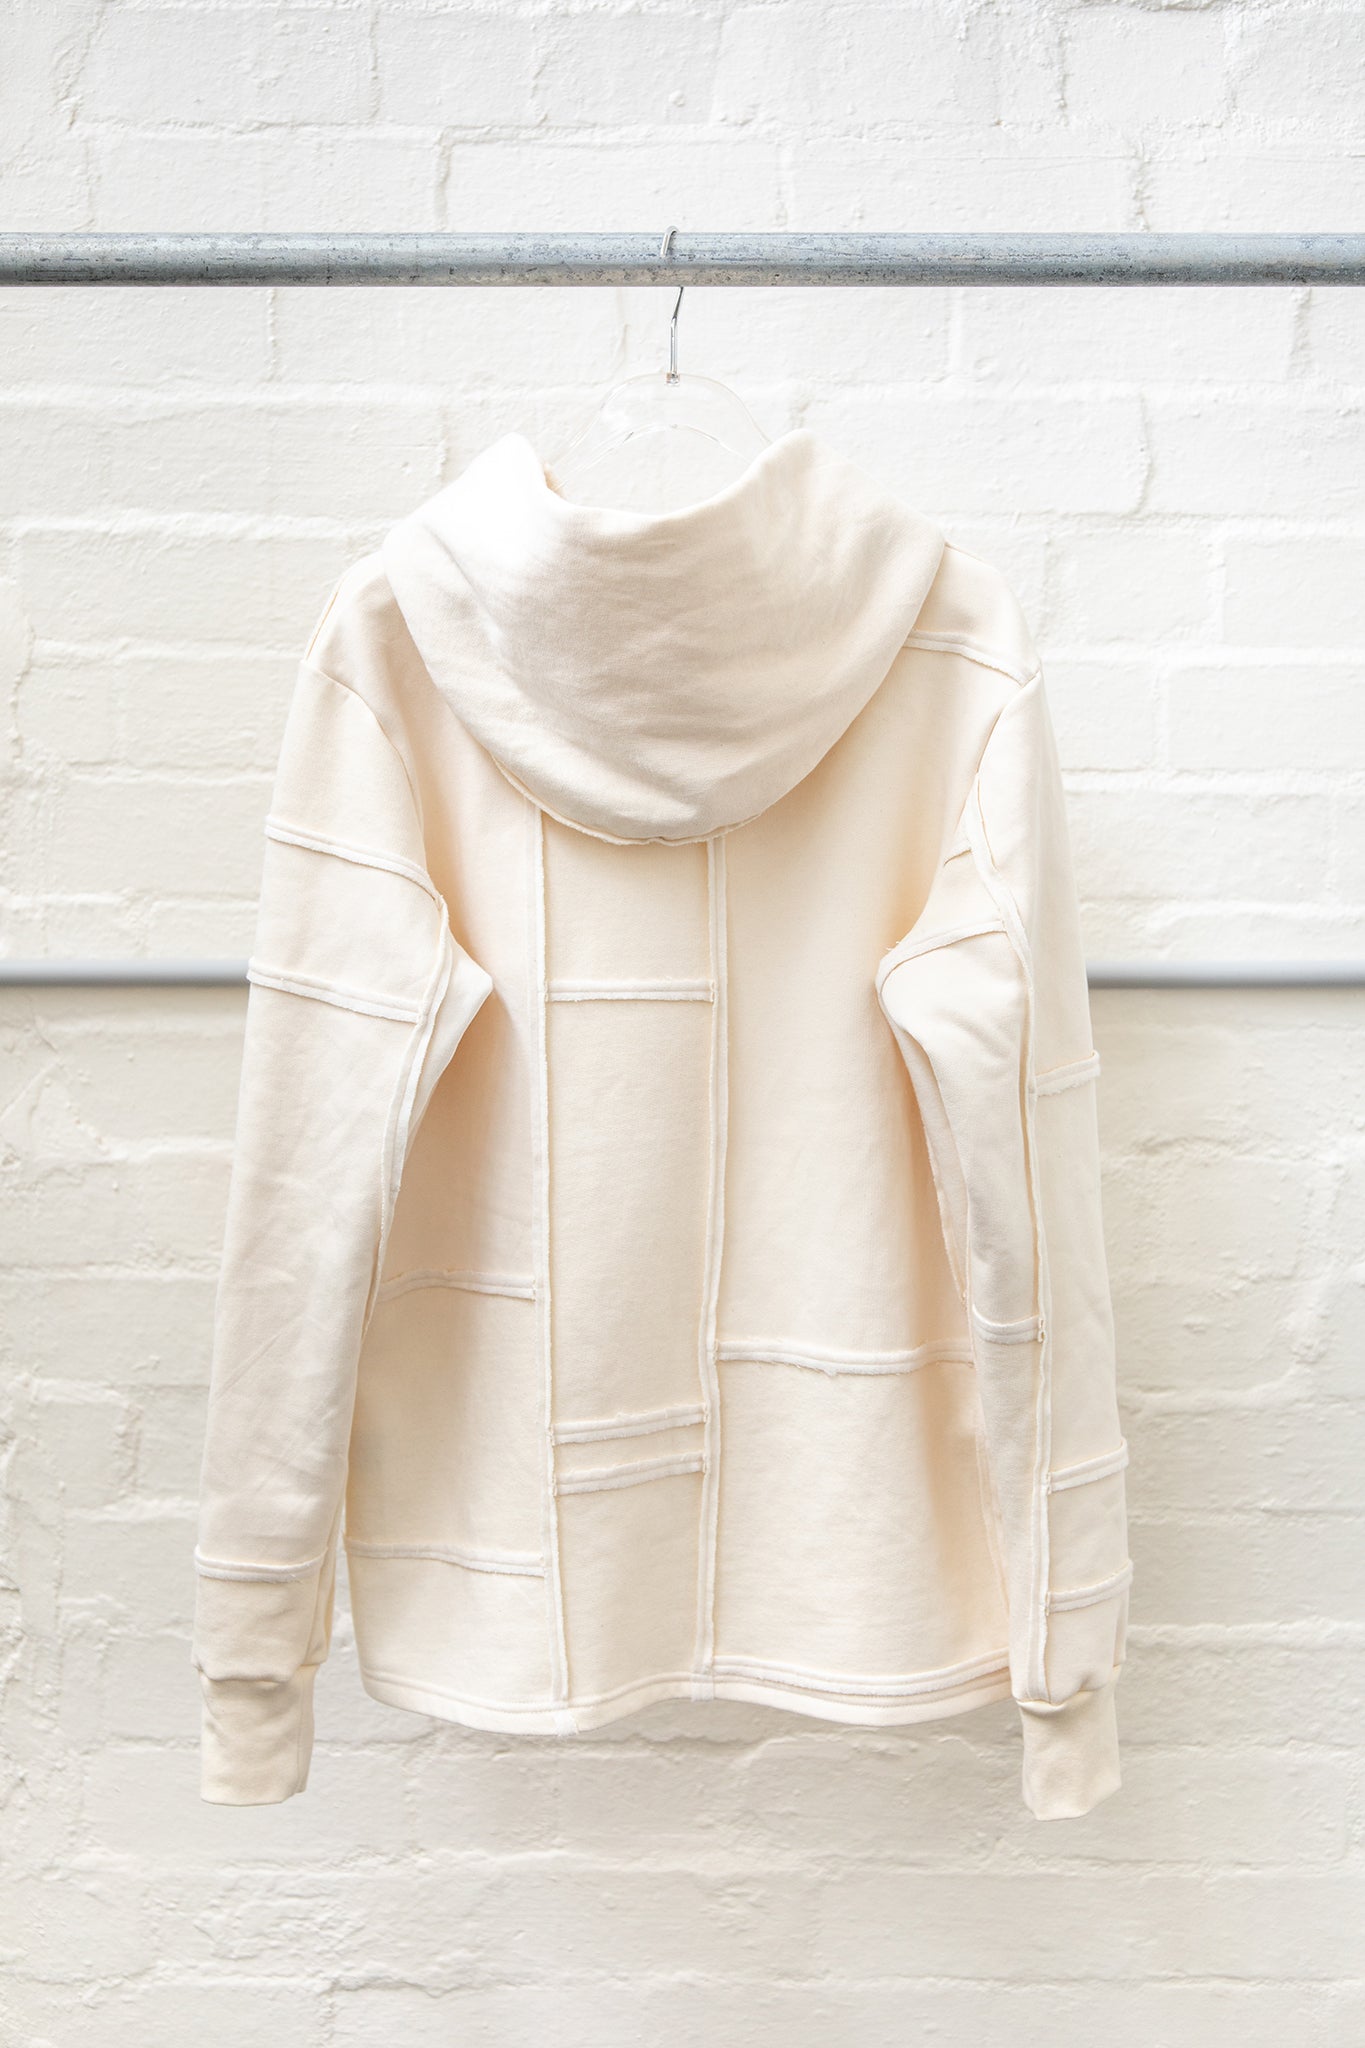 A.CFH Undyed fleece hood sweater in organic cotton